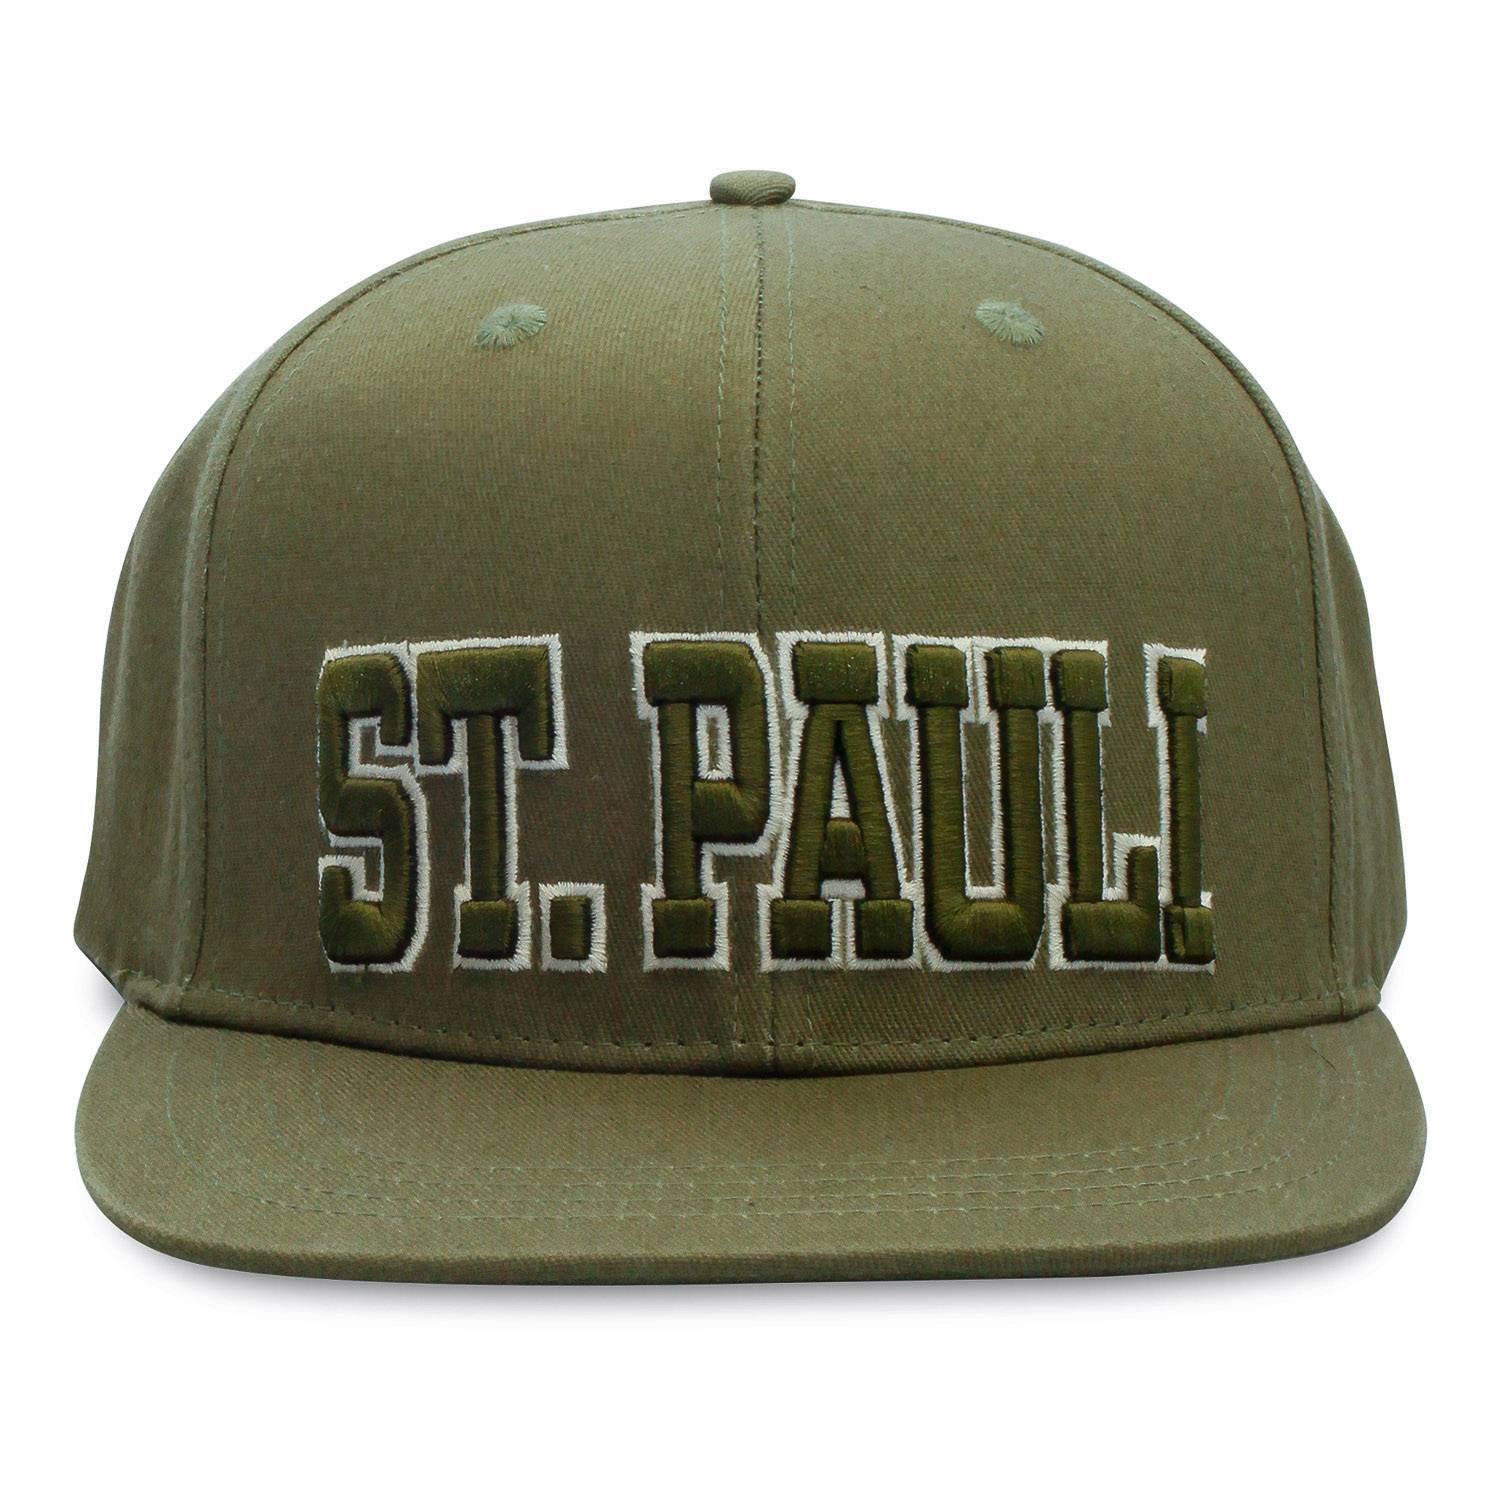 FC St. Pauli - Kappe Flatpeak ST. PAULI Schriftzug groß - oliv